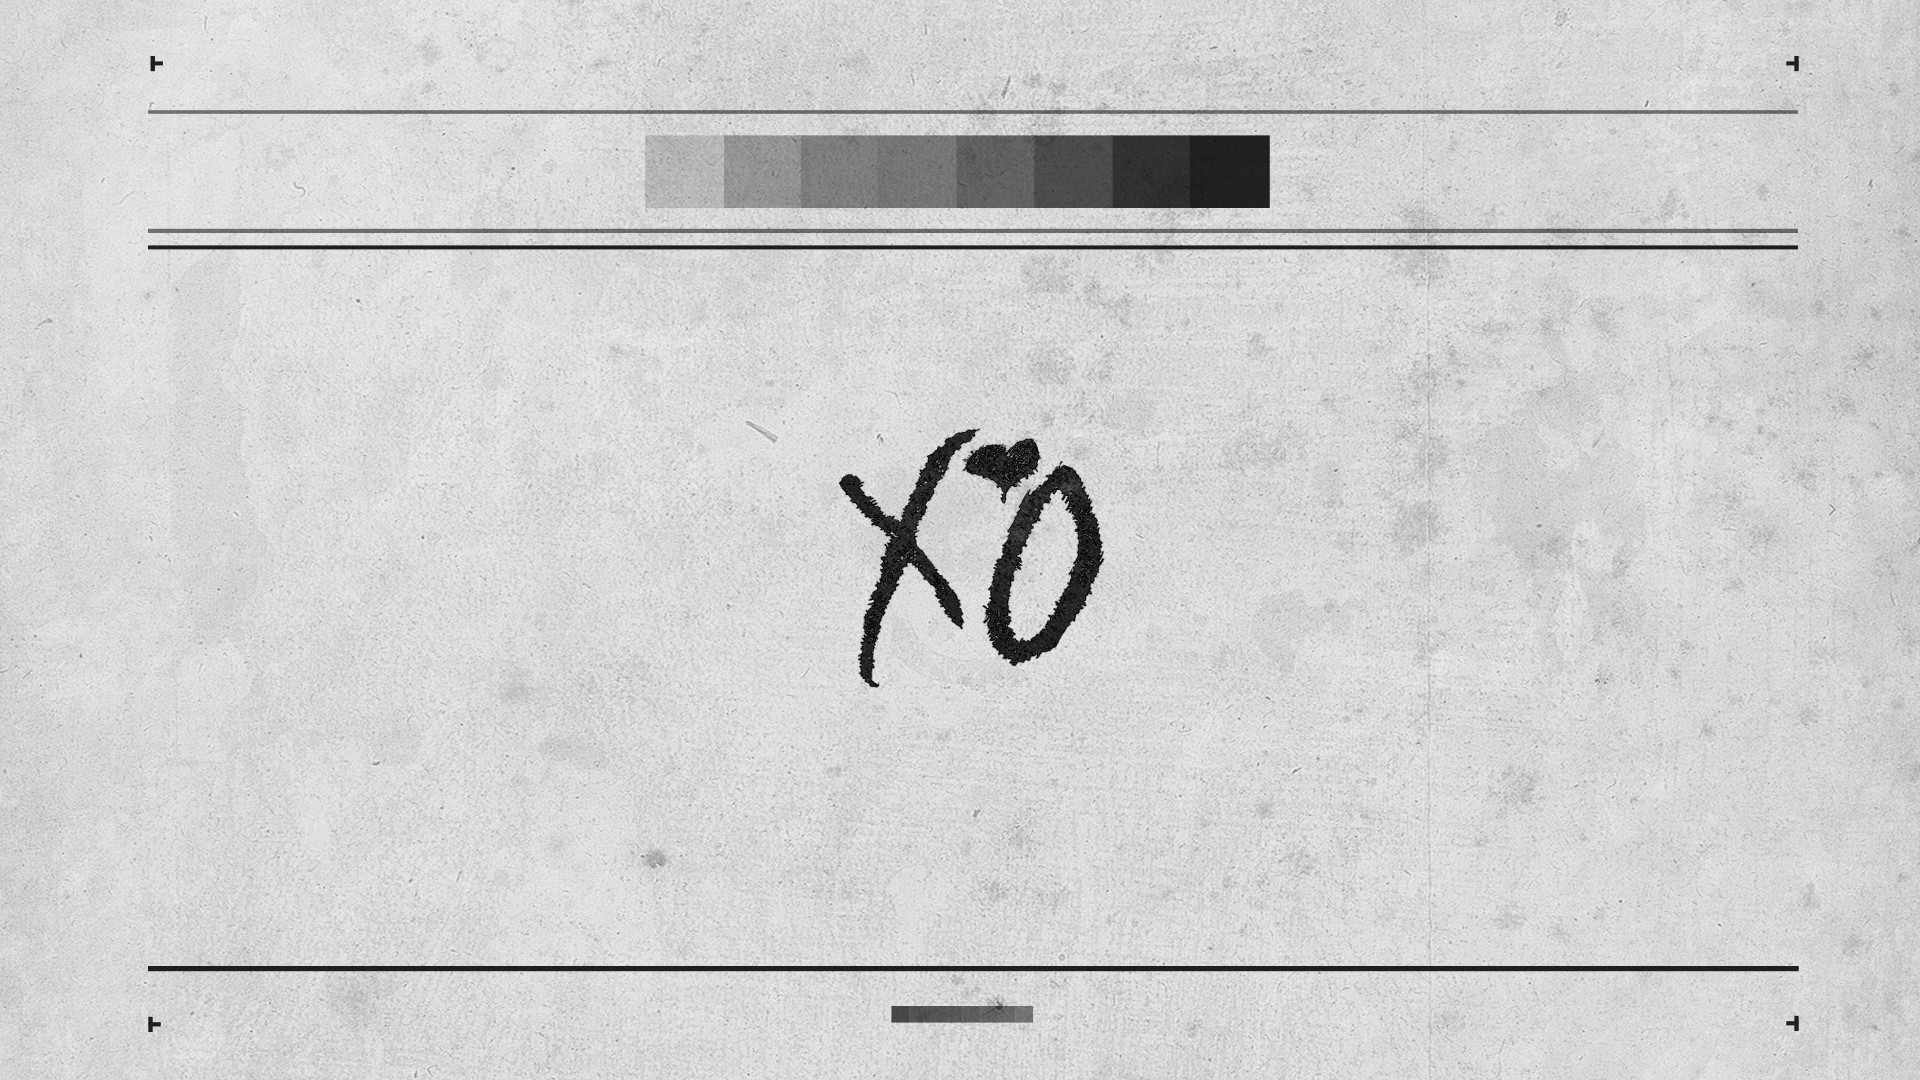 The Weeknd Xo Wallpaper 23 - Weeknd Xo - HD Wallpaper 